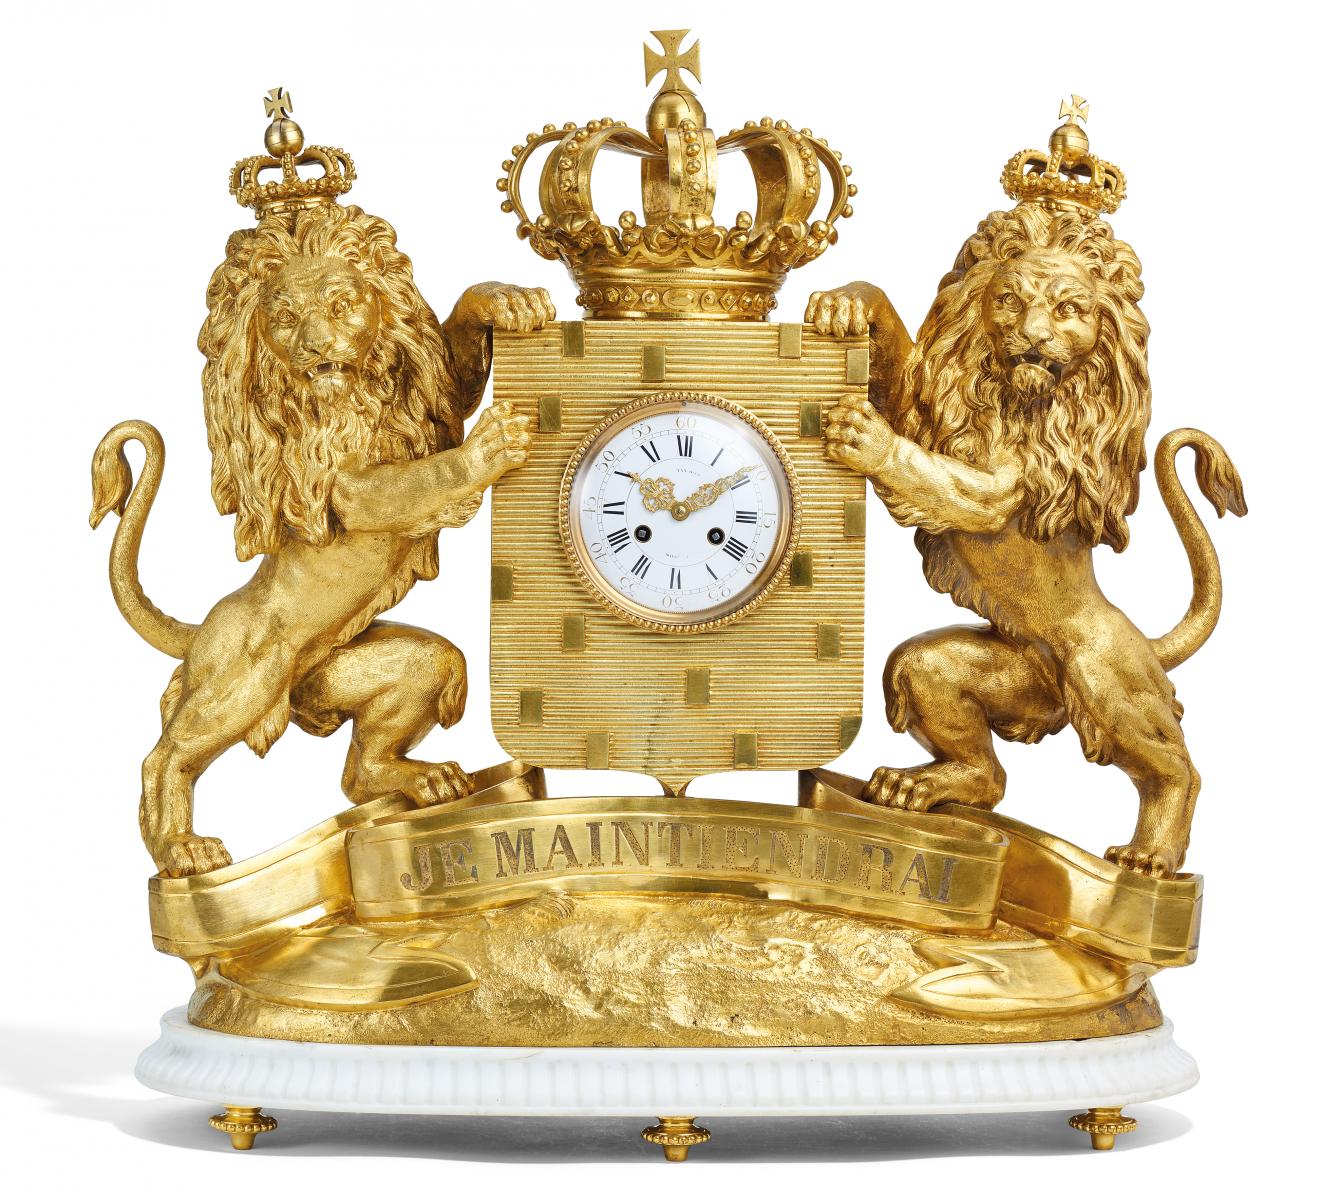 Paris - Monumentale Prunkpendule mit dem  Wappen der Niederlande, 65179-33, Van Ham Kunstauktionen